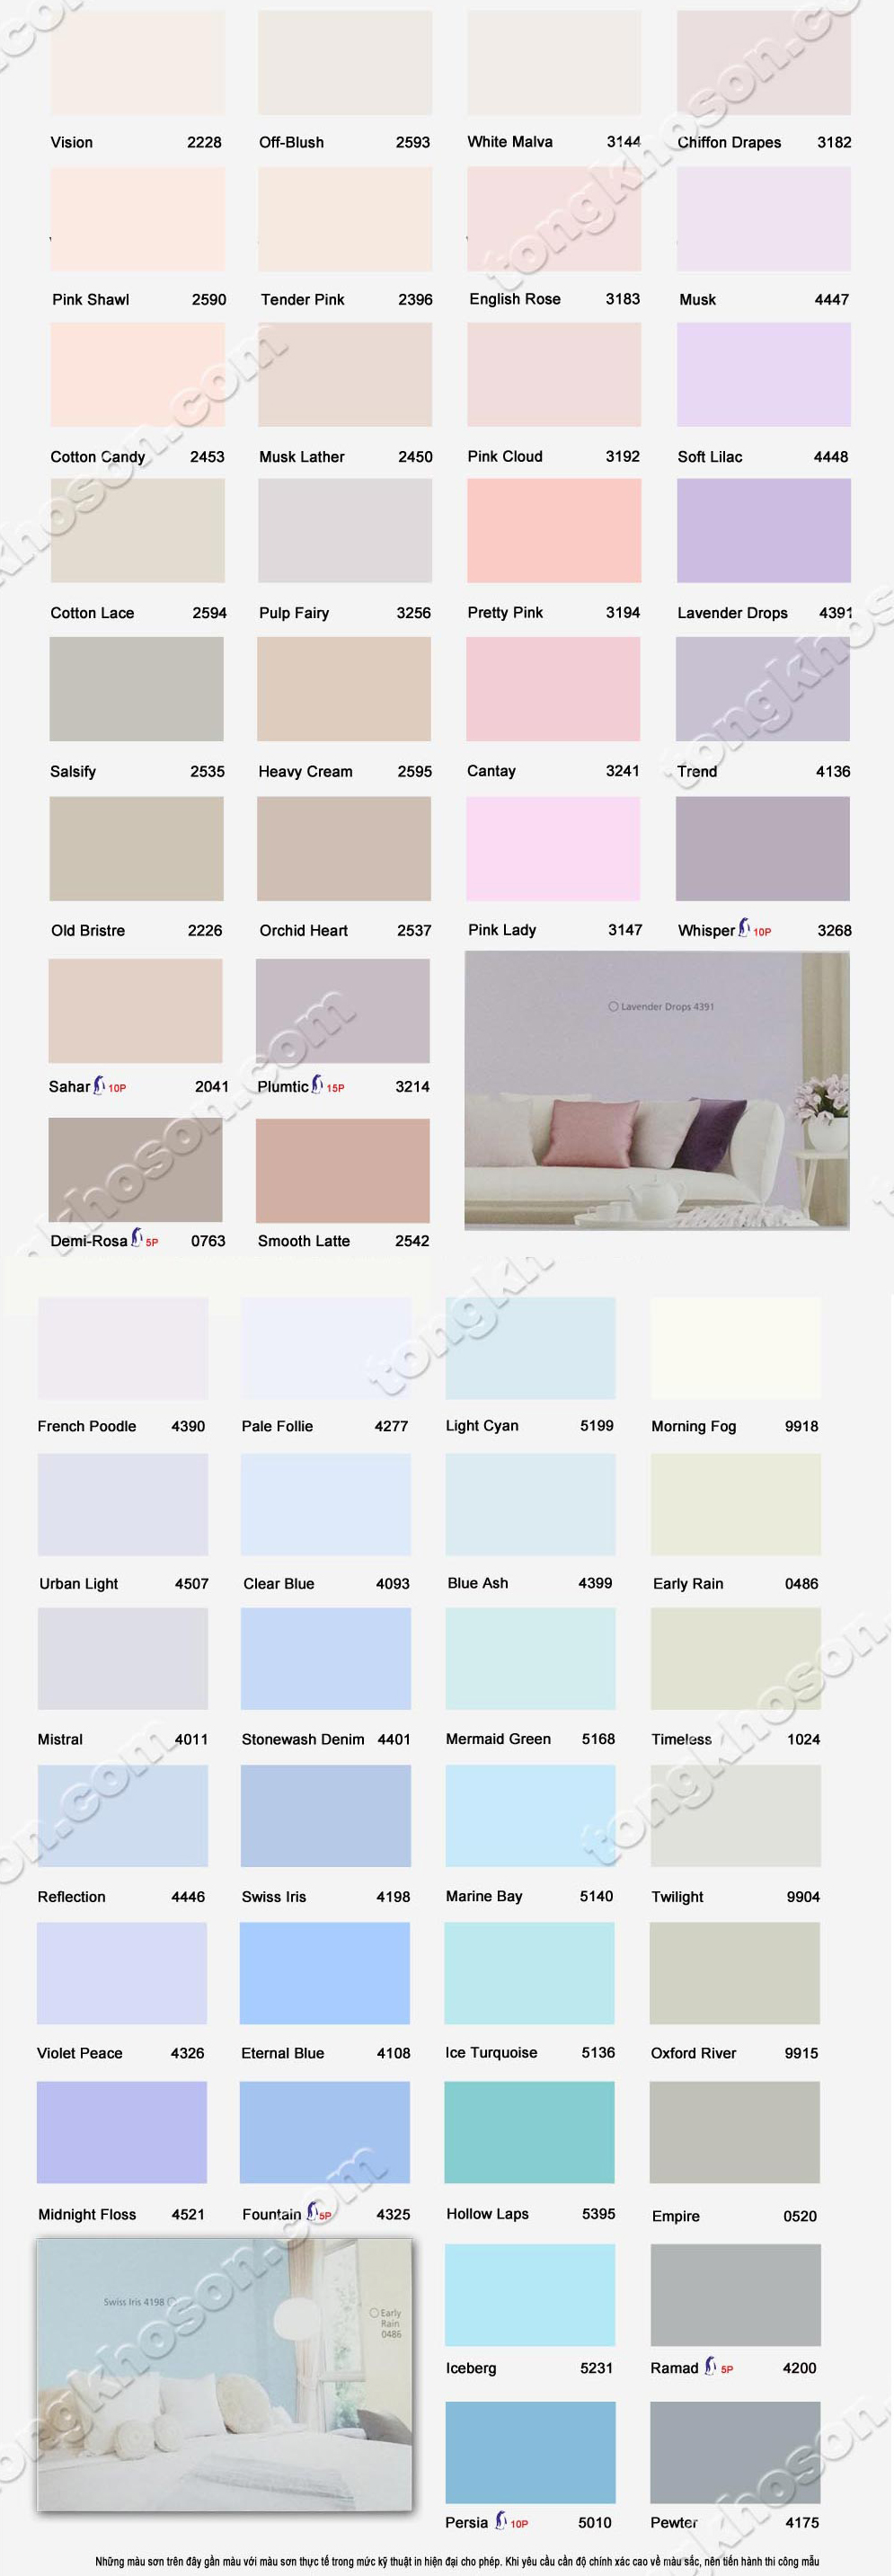 Bảng Màu Sơn Jotun 9918: Bảng màu sơn Jotun 9918 là công cụ hữu ích giúp cho bạn chọn được màu sơn phù hợp cho ngôi nhà của mình. Với nhiều tông màu đa dạng và trang trọng, bạn sẽ có nhiều lựa chọn để tạo nên một không gian sống đẹp đẽ và ấn tượng.